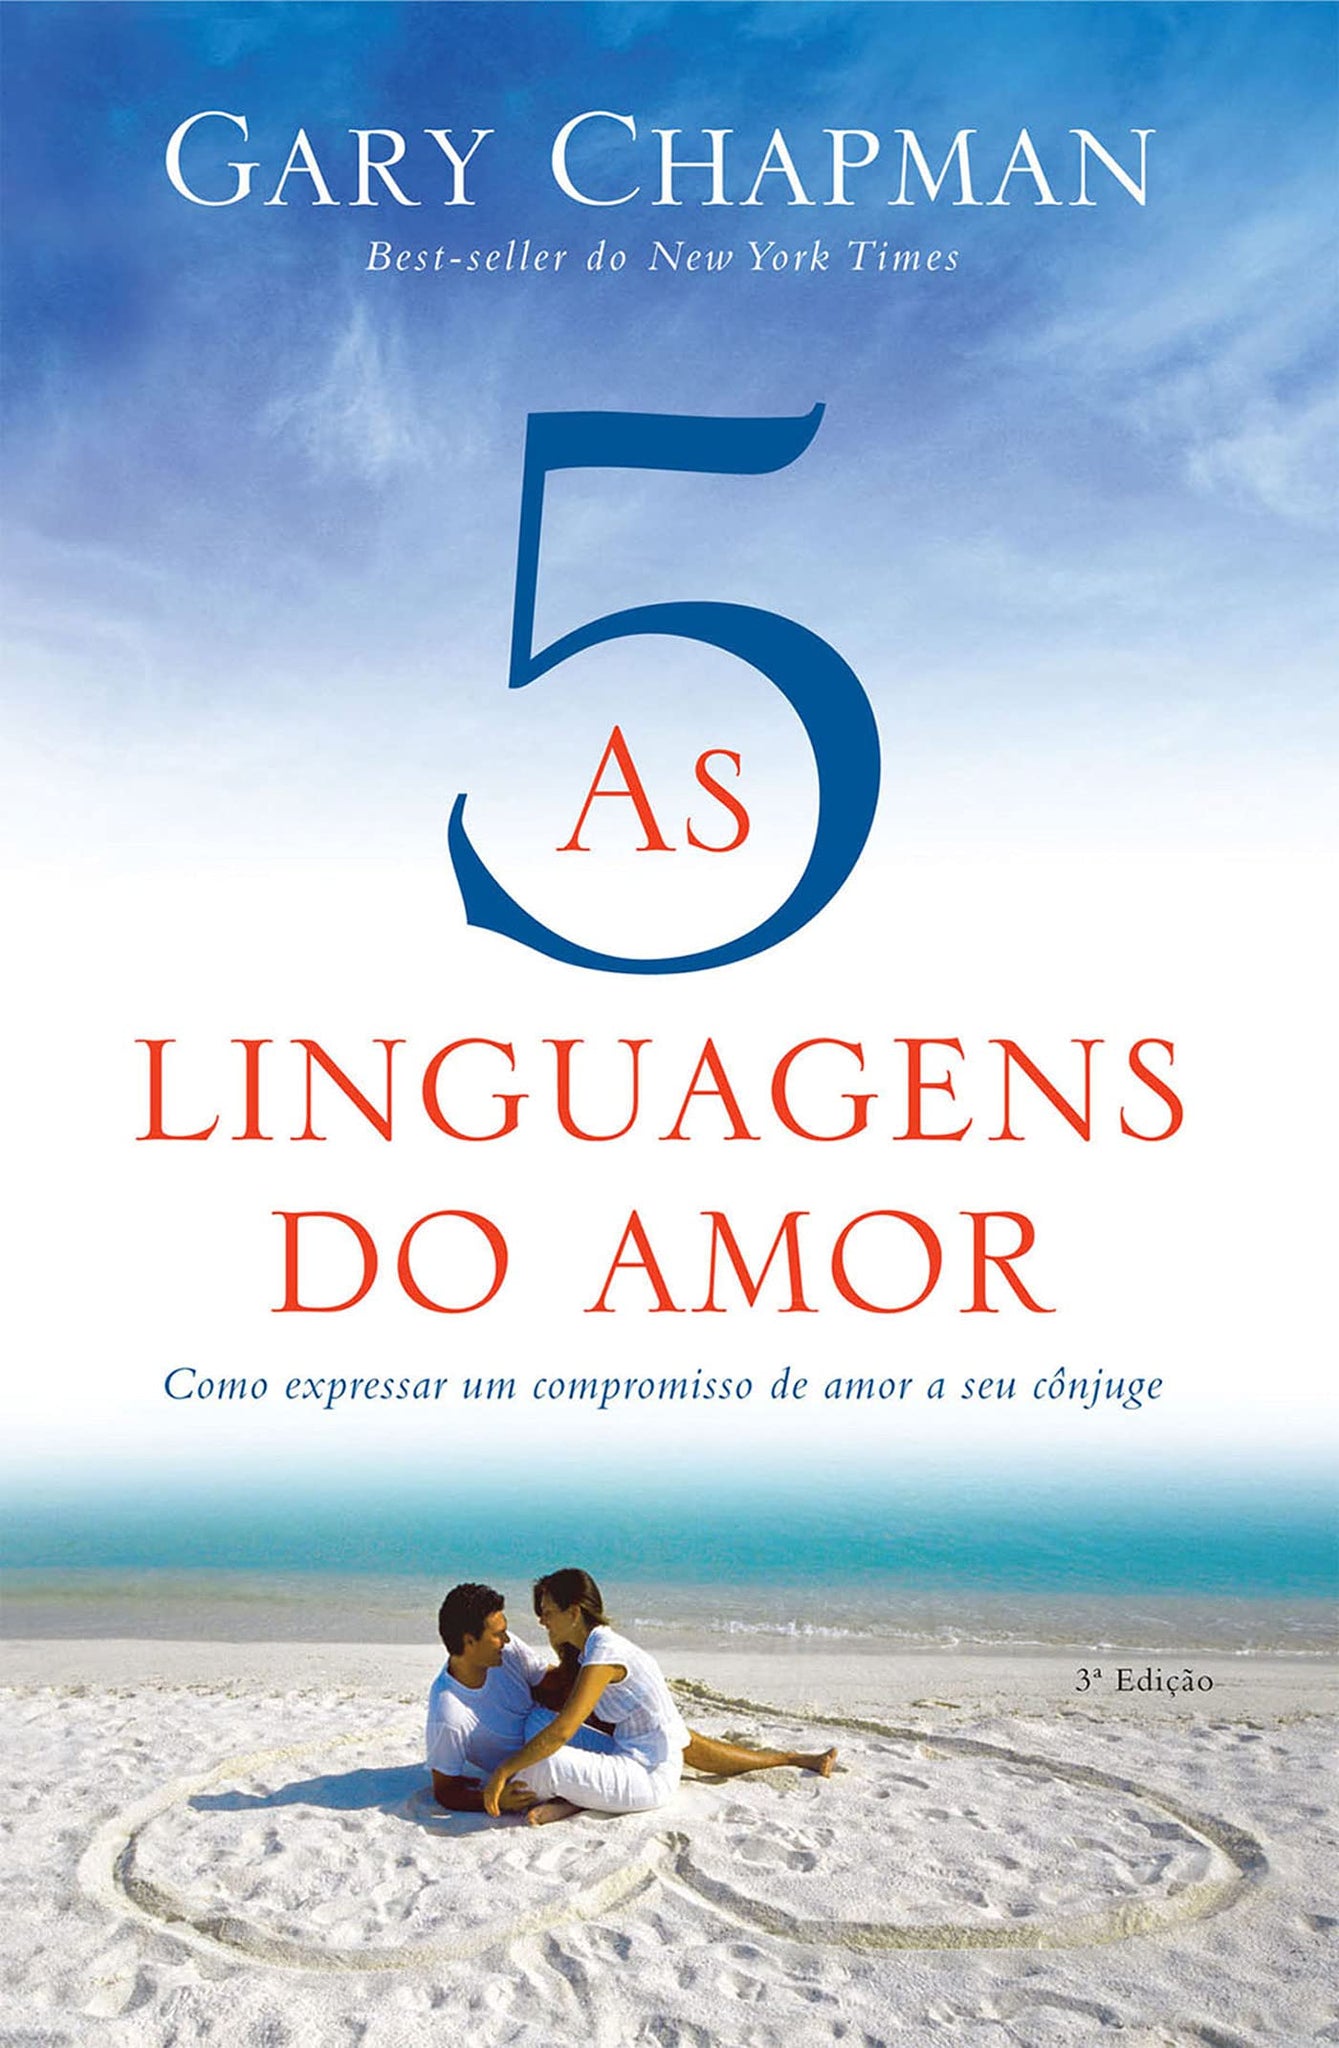 As 5 Linguagens do Amor de Gary Chapman